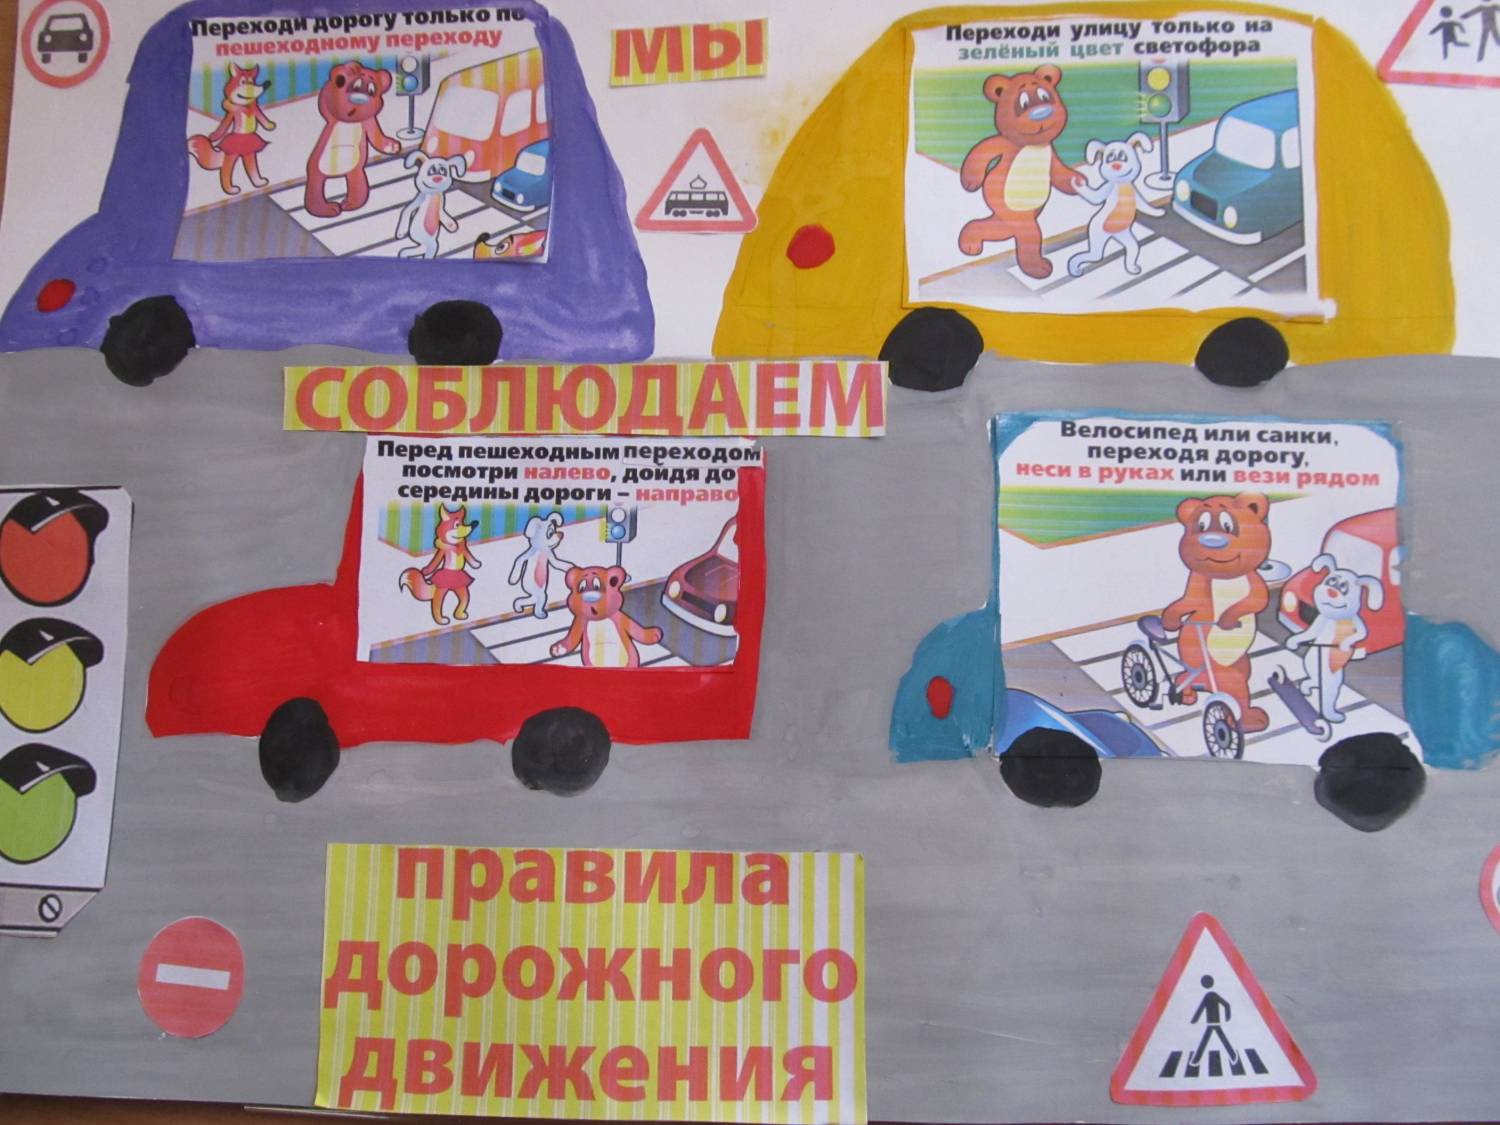 Плакат соблюдение правил. Плакат ПДД. Плакат на тему ПДД. Плакат по безопасности дорожного движения. Детские плакаты ПДД.